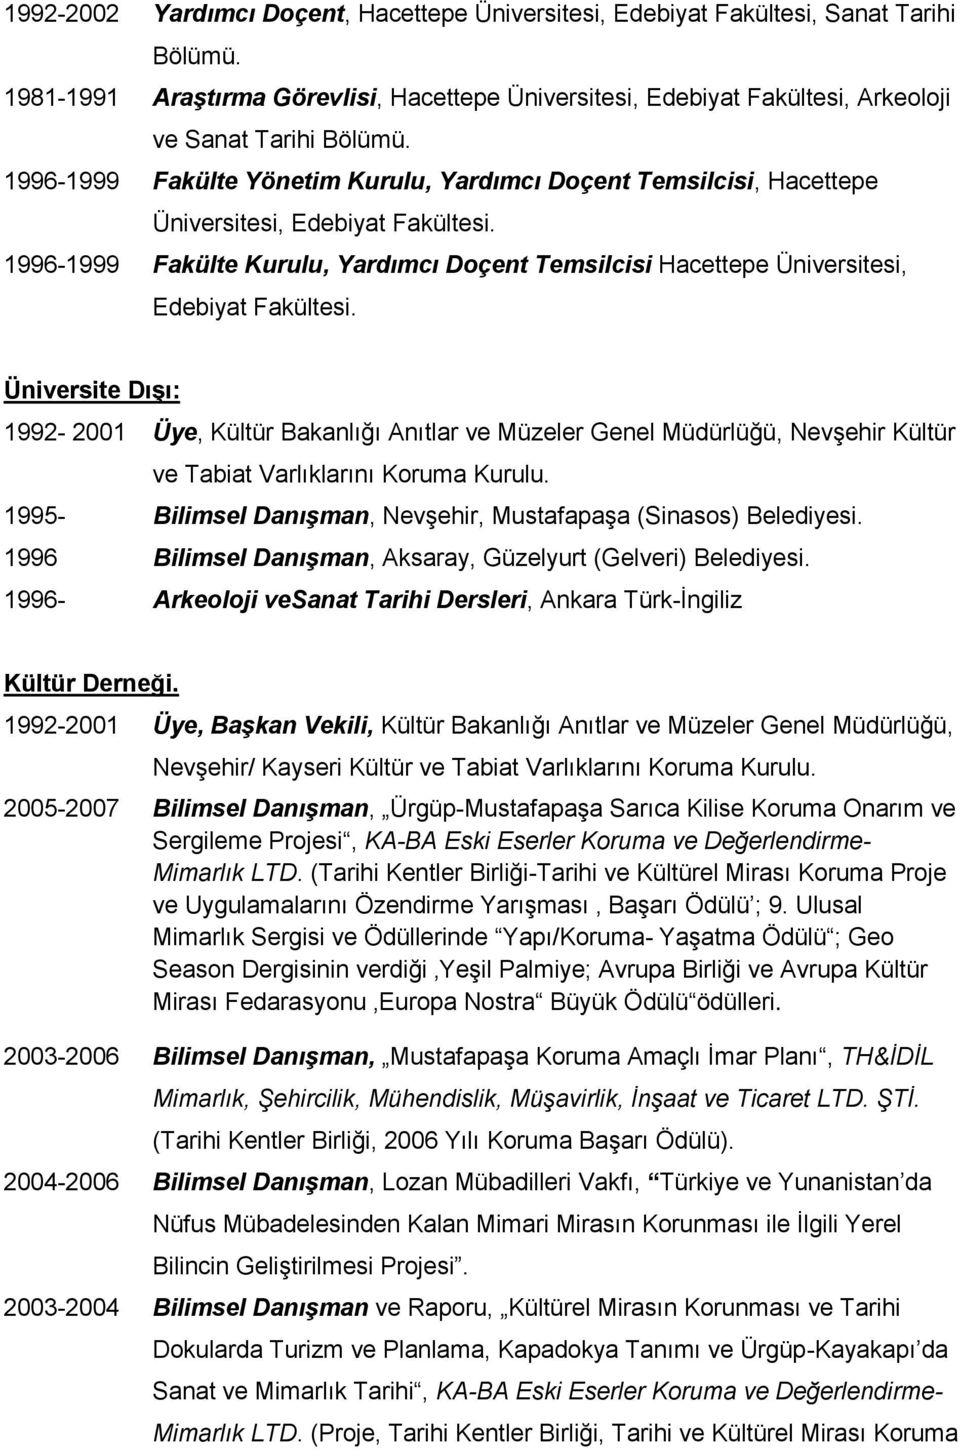 1996-1999 Fakülte Kurulu, Yardımcı Doçent Temsilcisi Hacettepe Üniversitesi, Edebiyat Fakültesi.